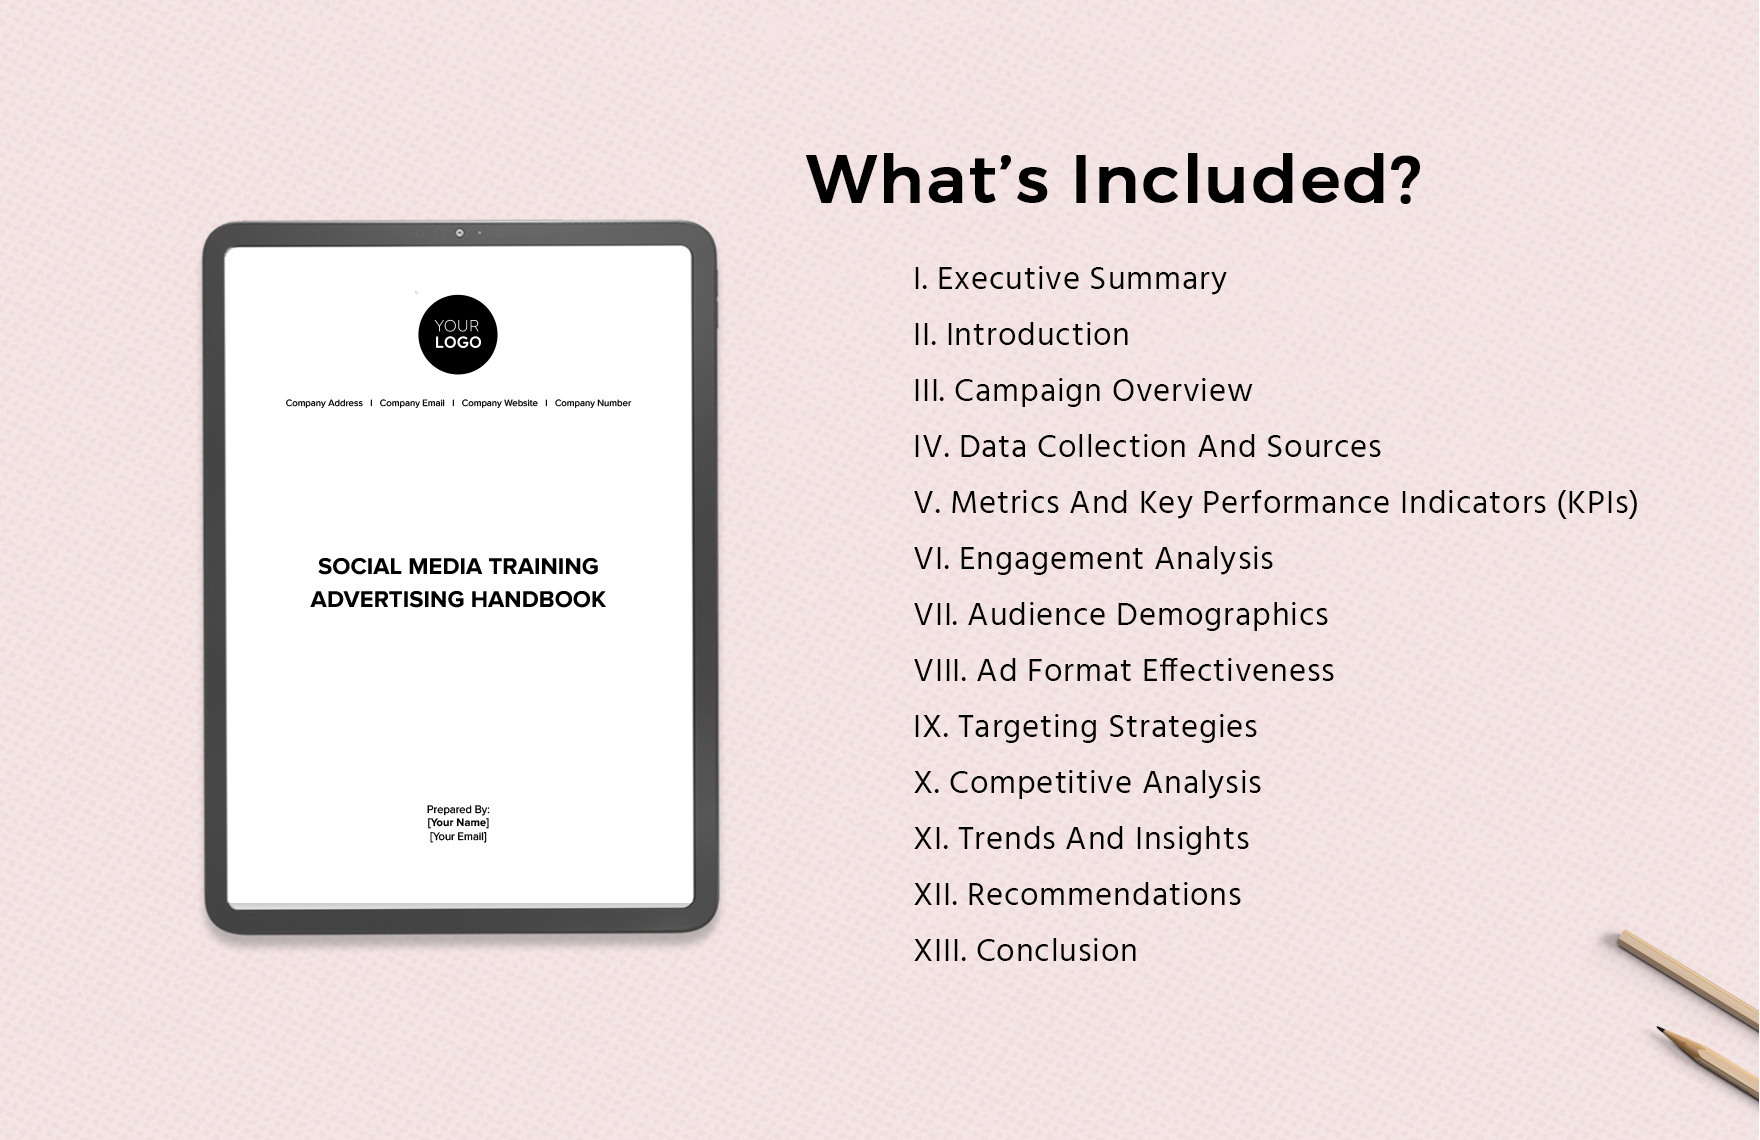 Social Media Training Advertising Handbook Template